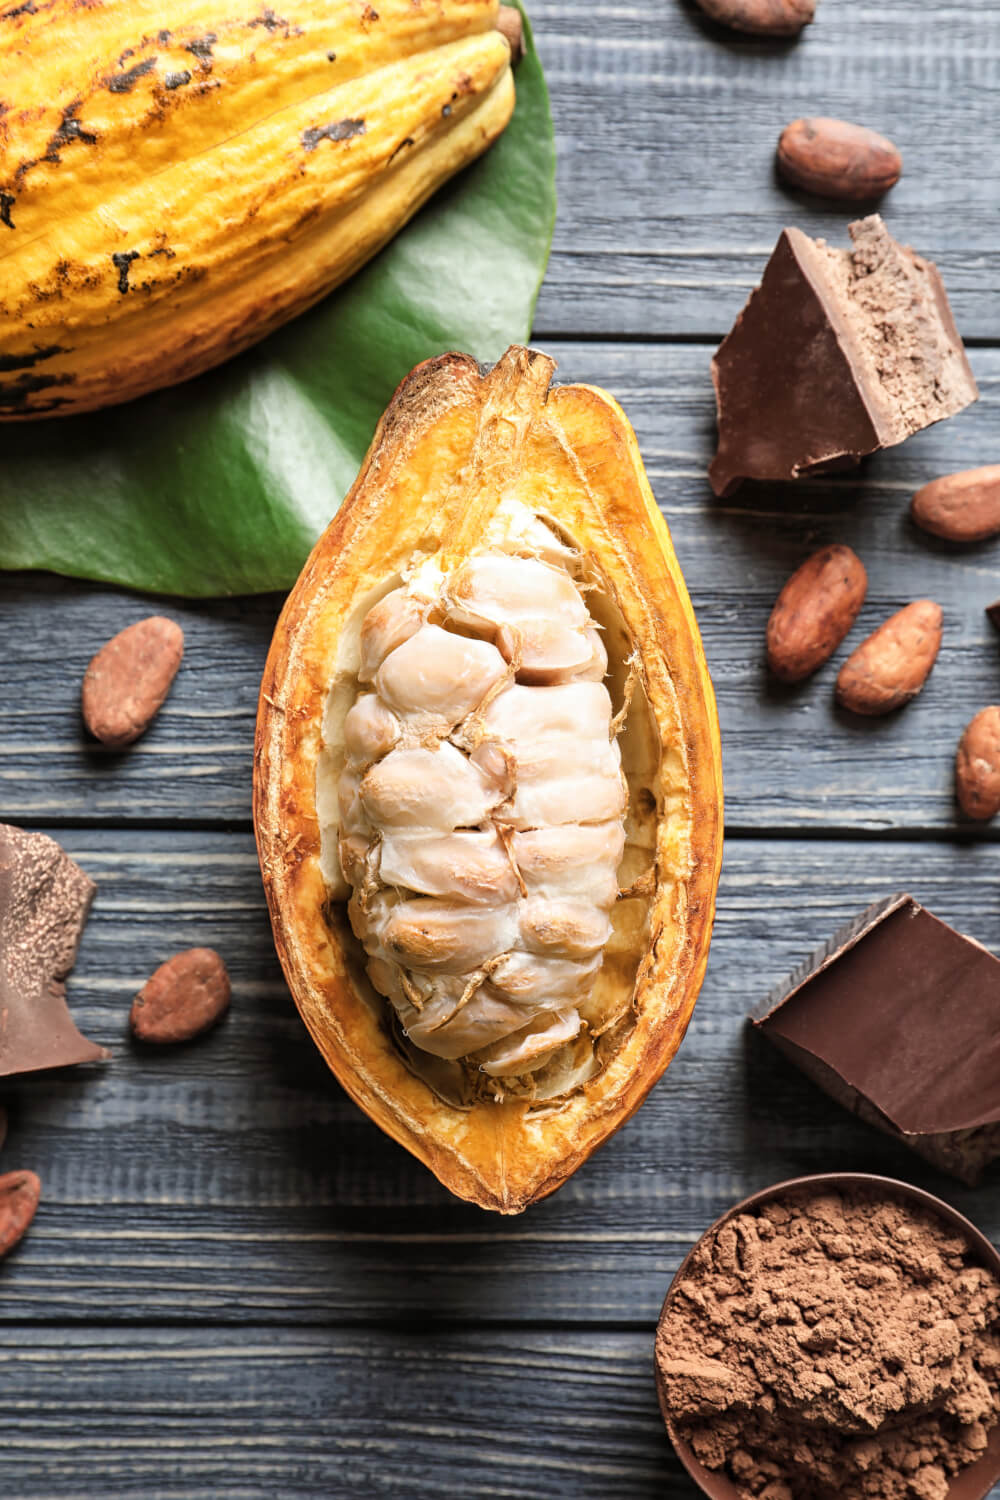 Kakaofrucht von innen für die Zubereitung der Kakaobohnen